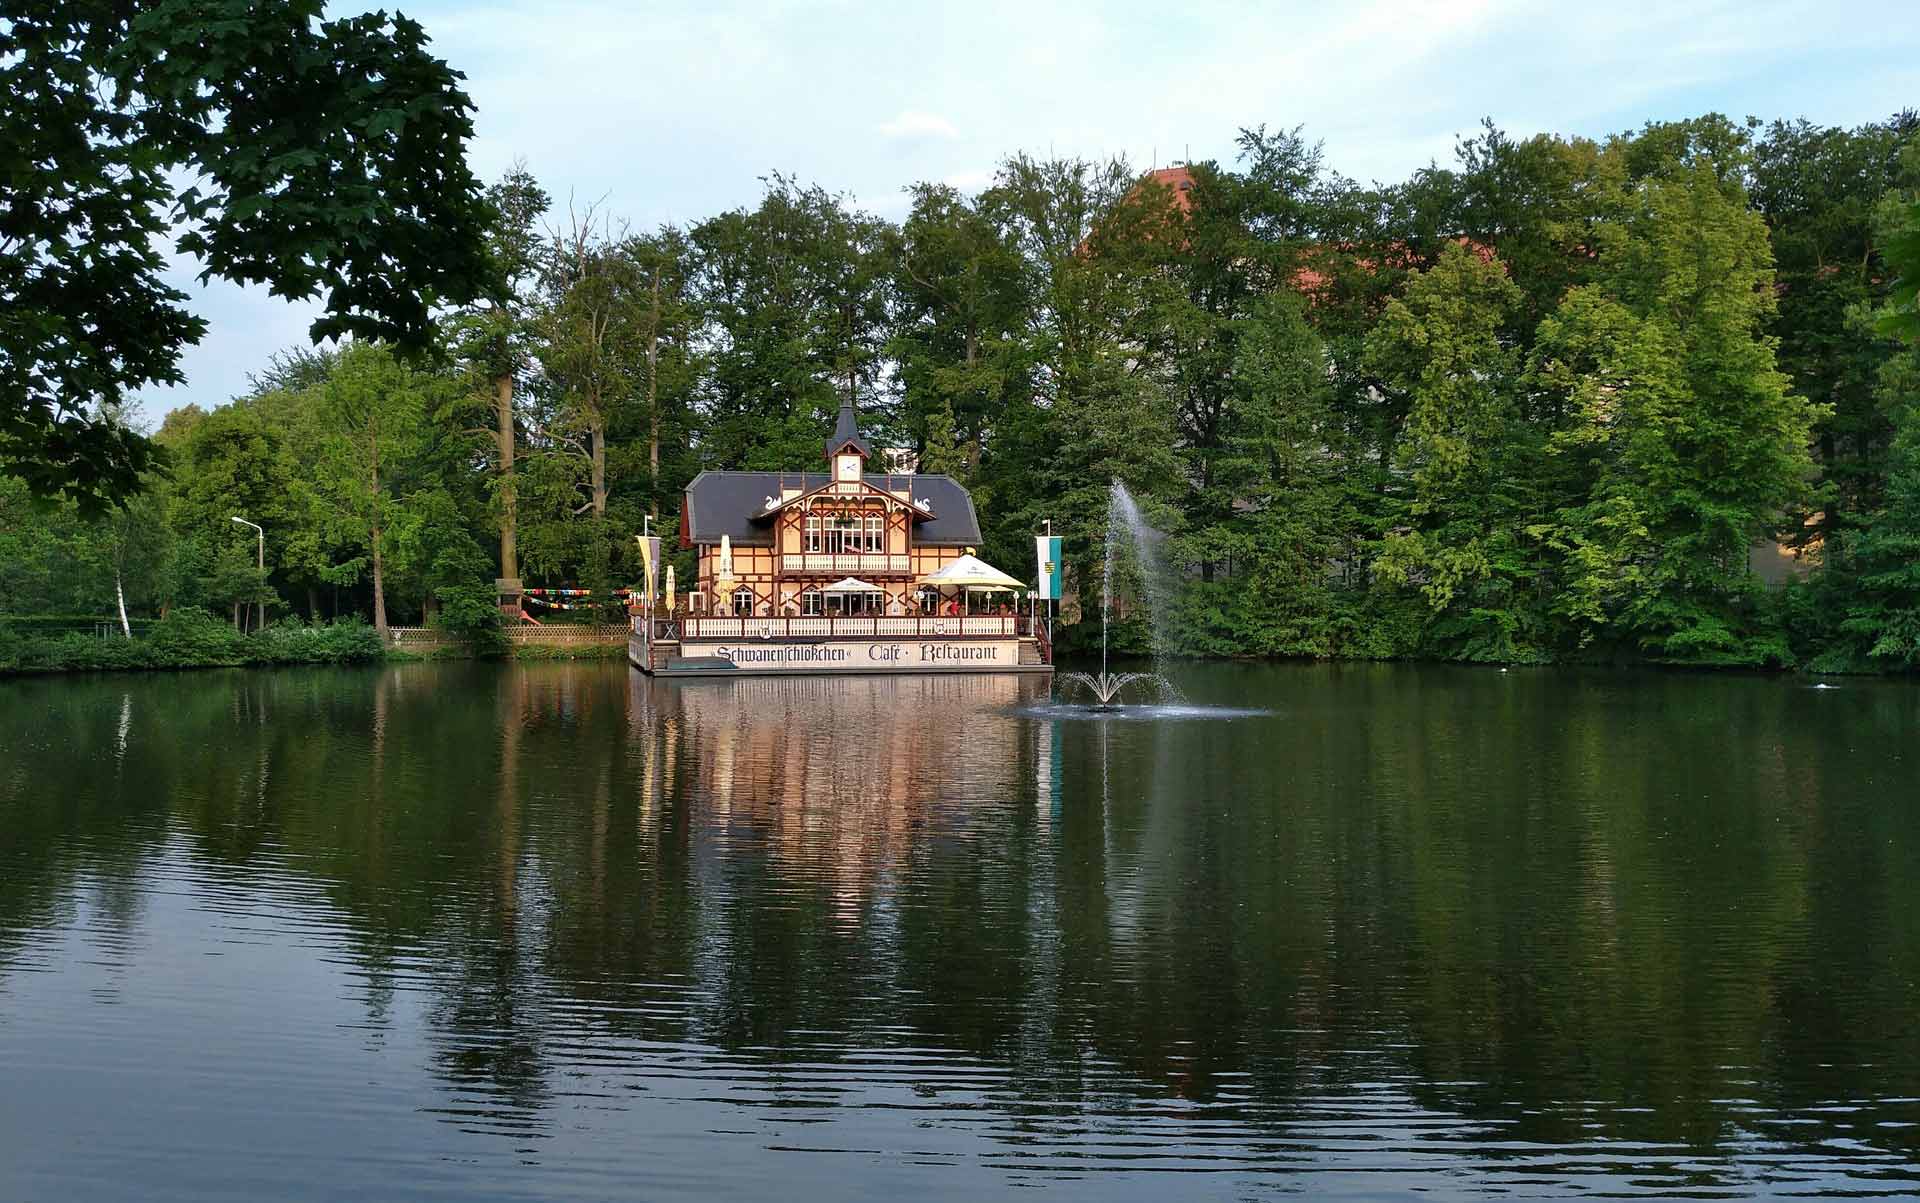 Am malerischen Ufer des Sees erhebt sich das zauberhafte Schwanenschlösschen, ein Symbol für zeitlose Schönheit und romantische Eleganz inmitten idyllischer Naturkulisse.